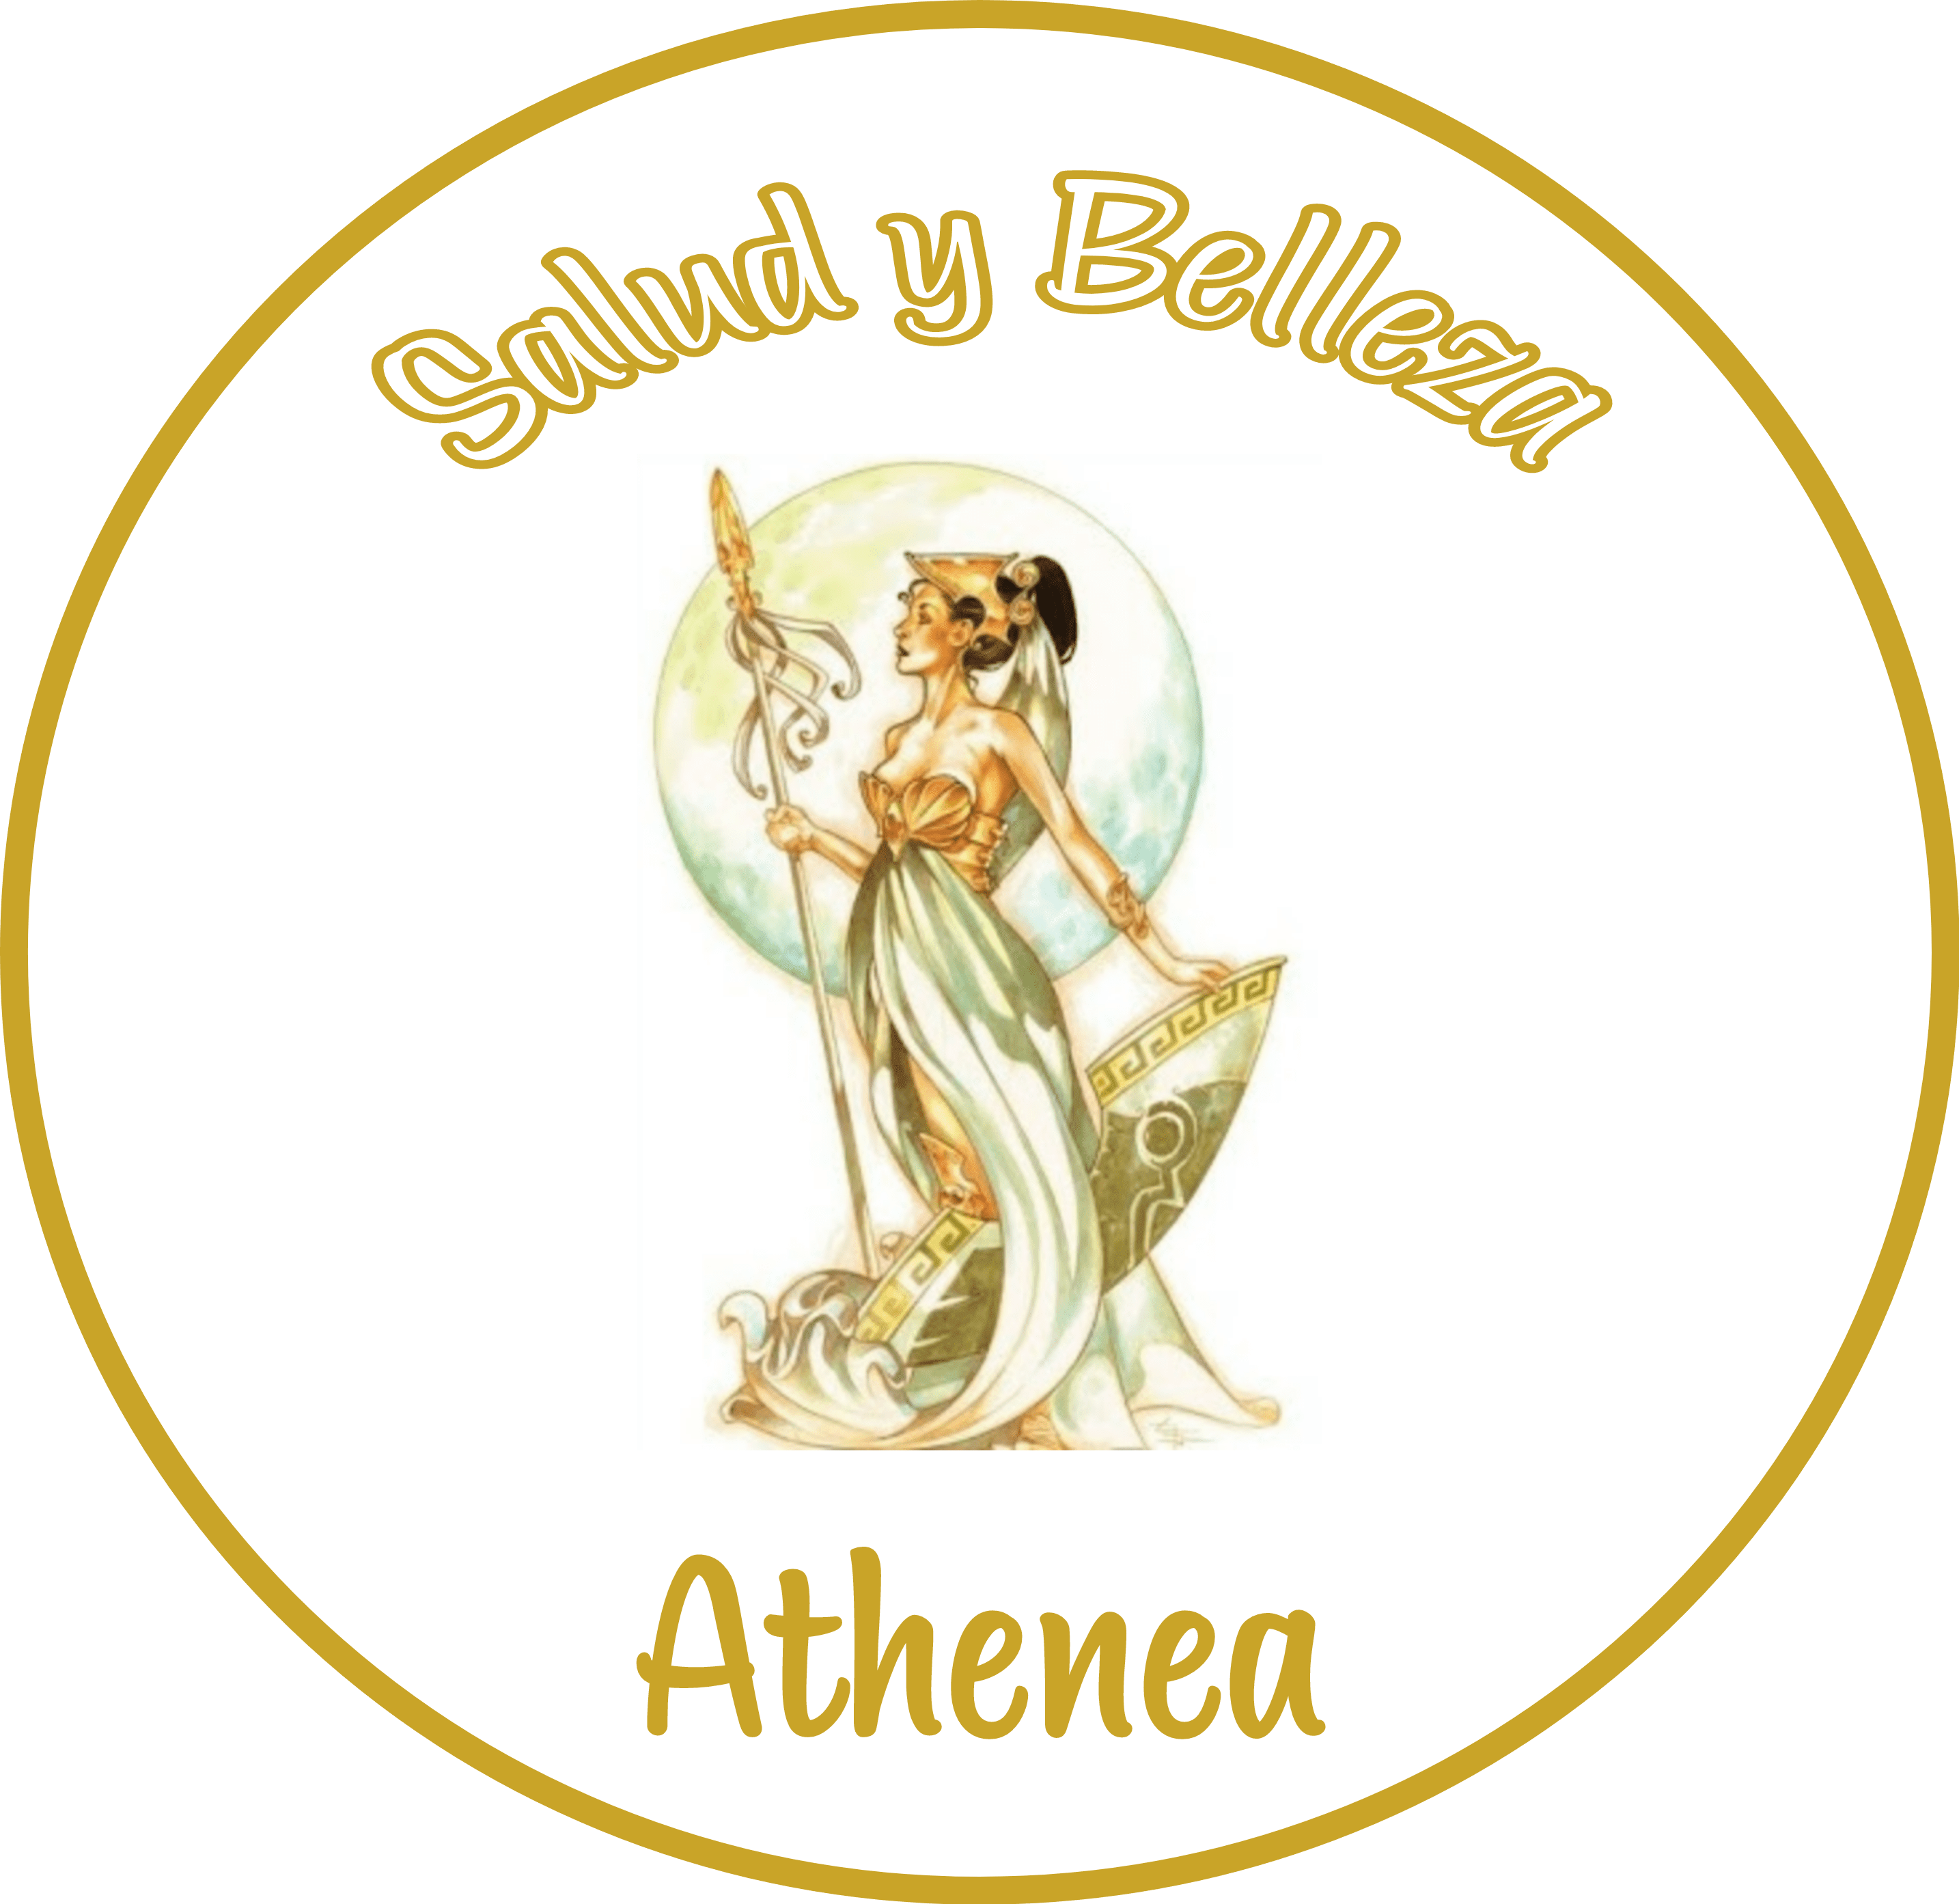 Salud y Belleza Athenea